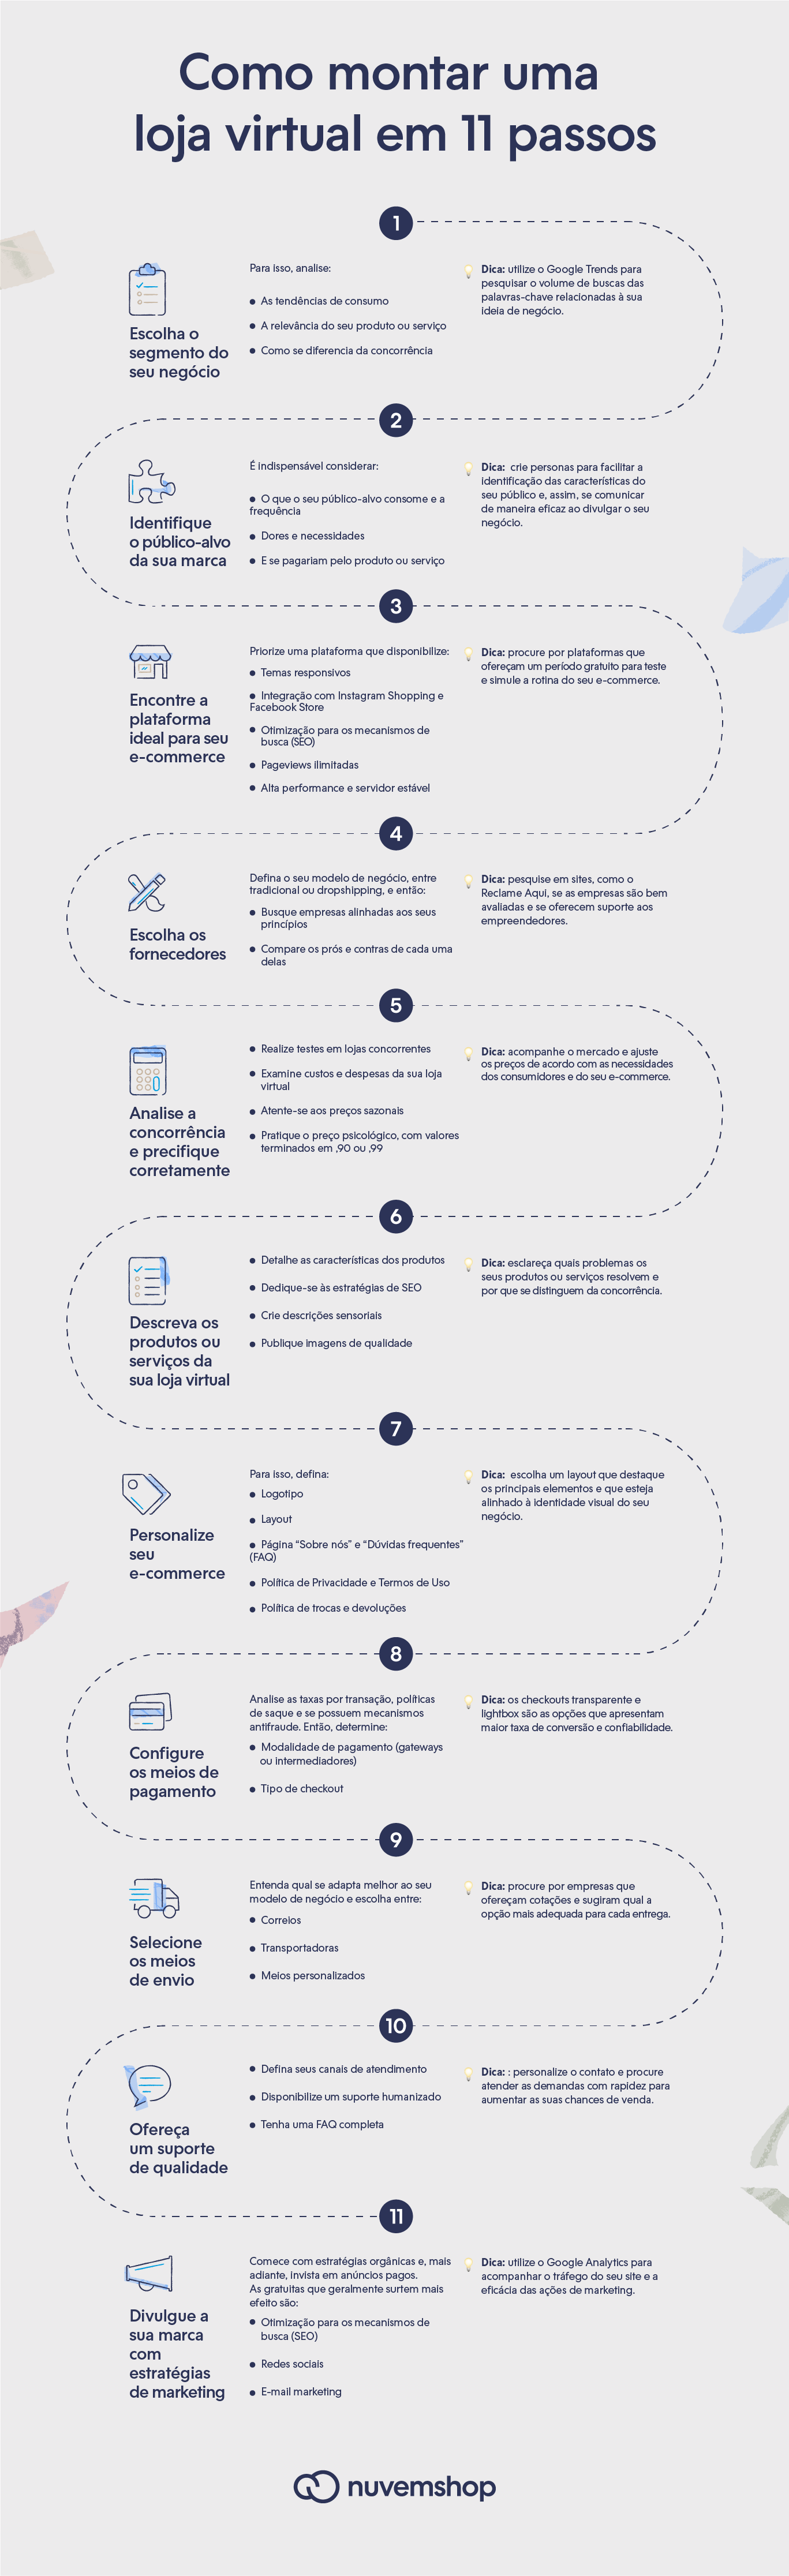 Infográfico com 11 passos para criar uma loja virtual de roupas